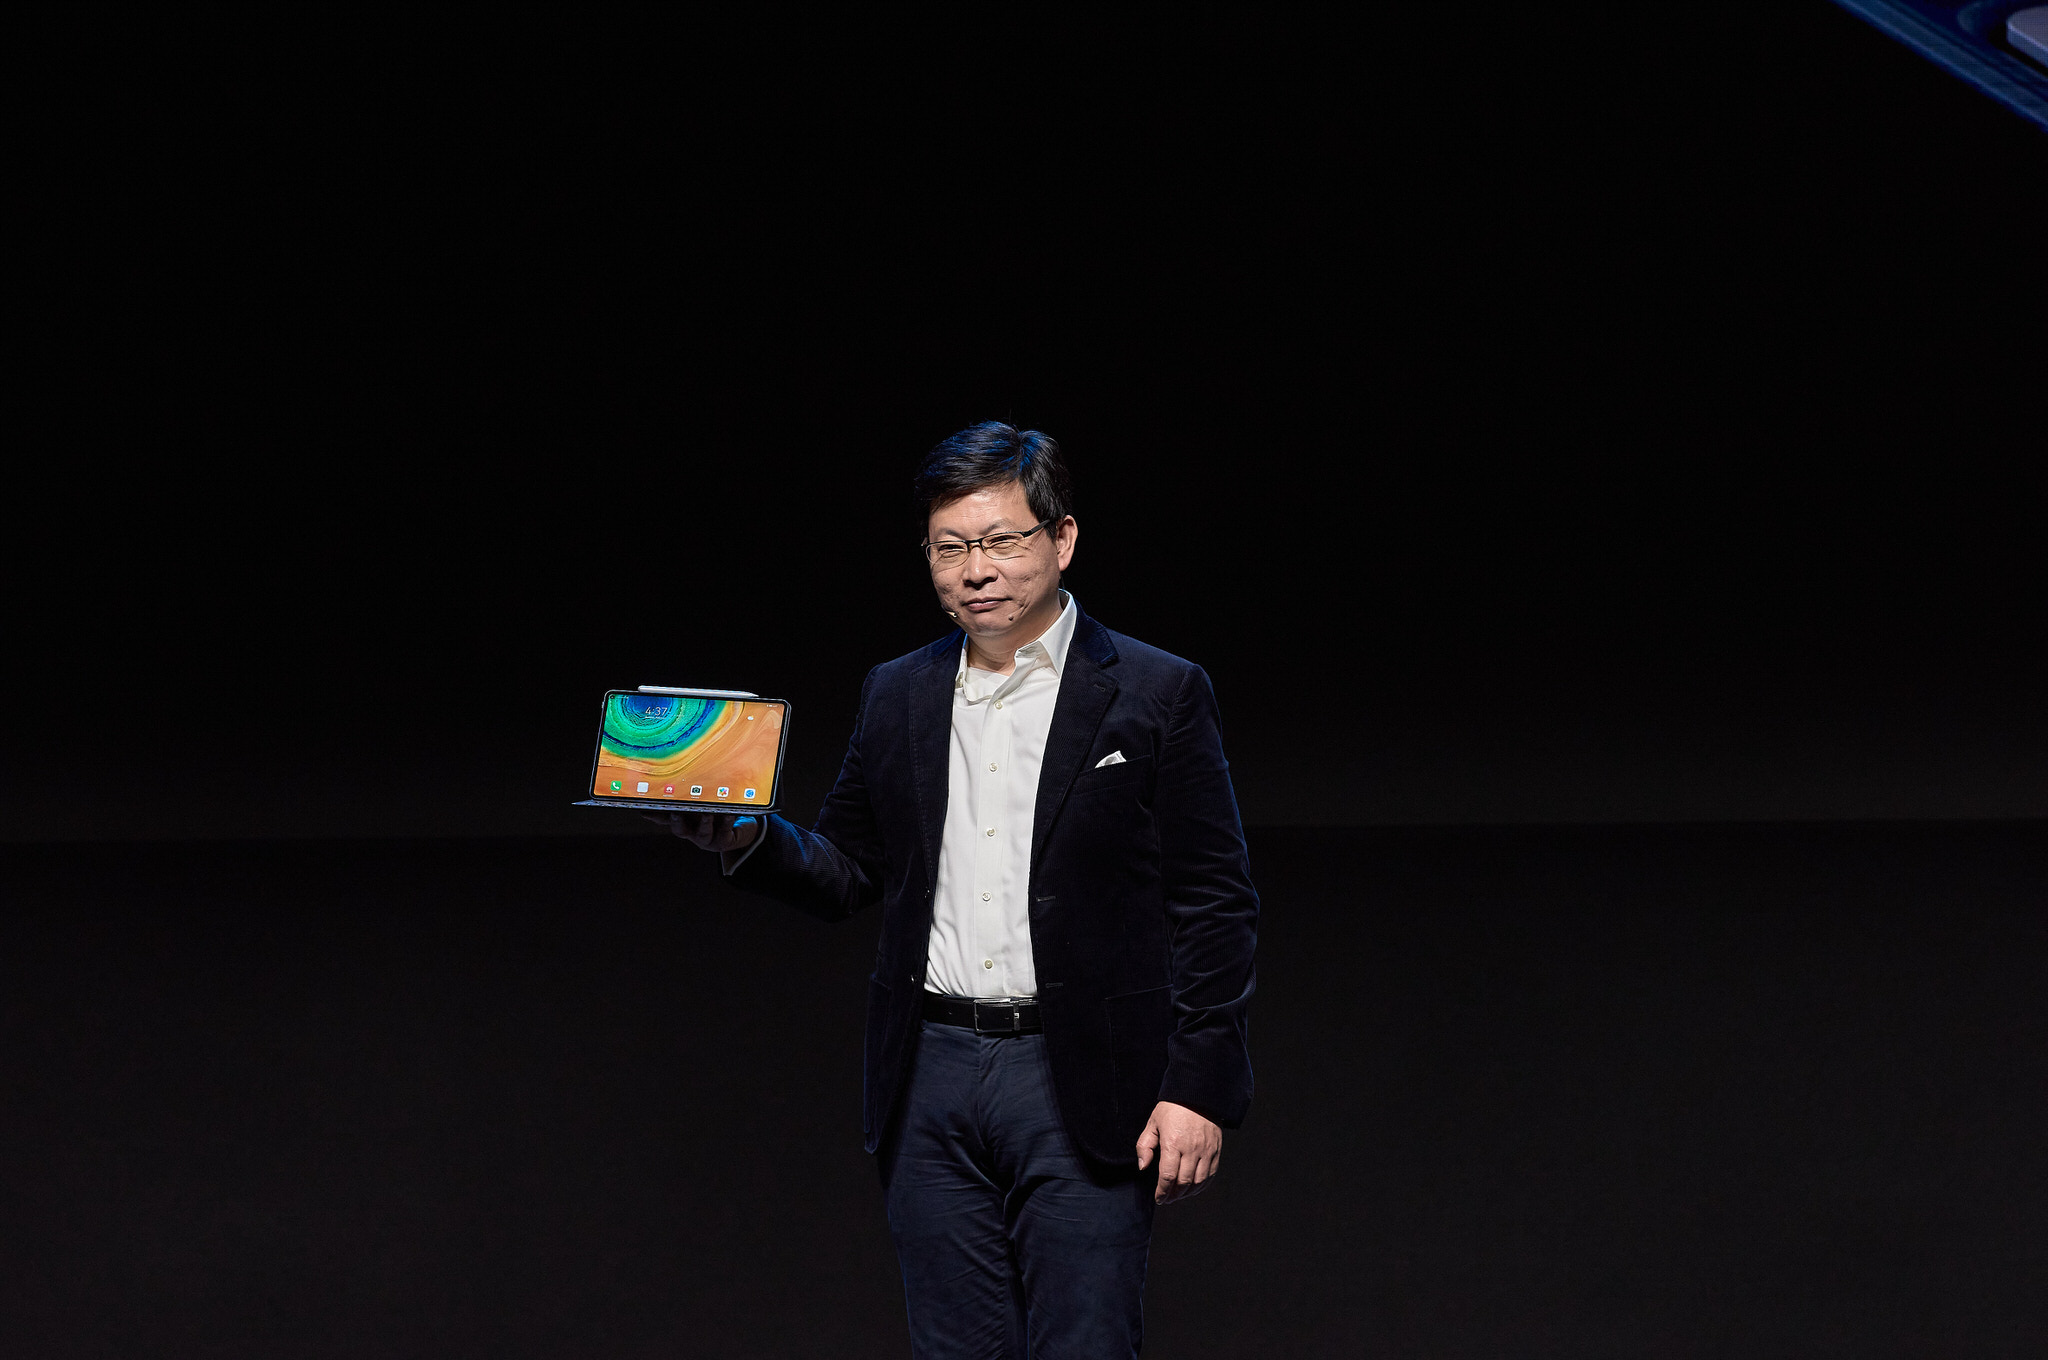 Huawei Mate Xs chính thức ra mắt tại Tây Ban Nha, smartphone màn hình gập thế hệ 2